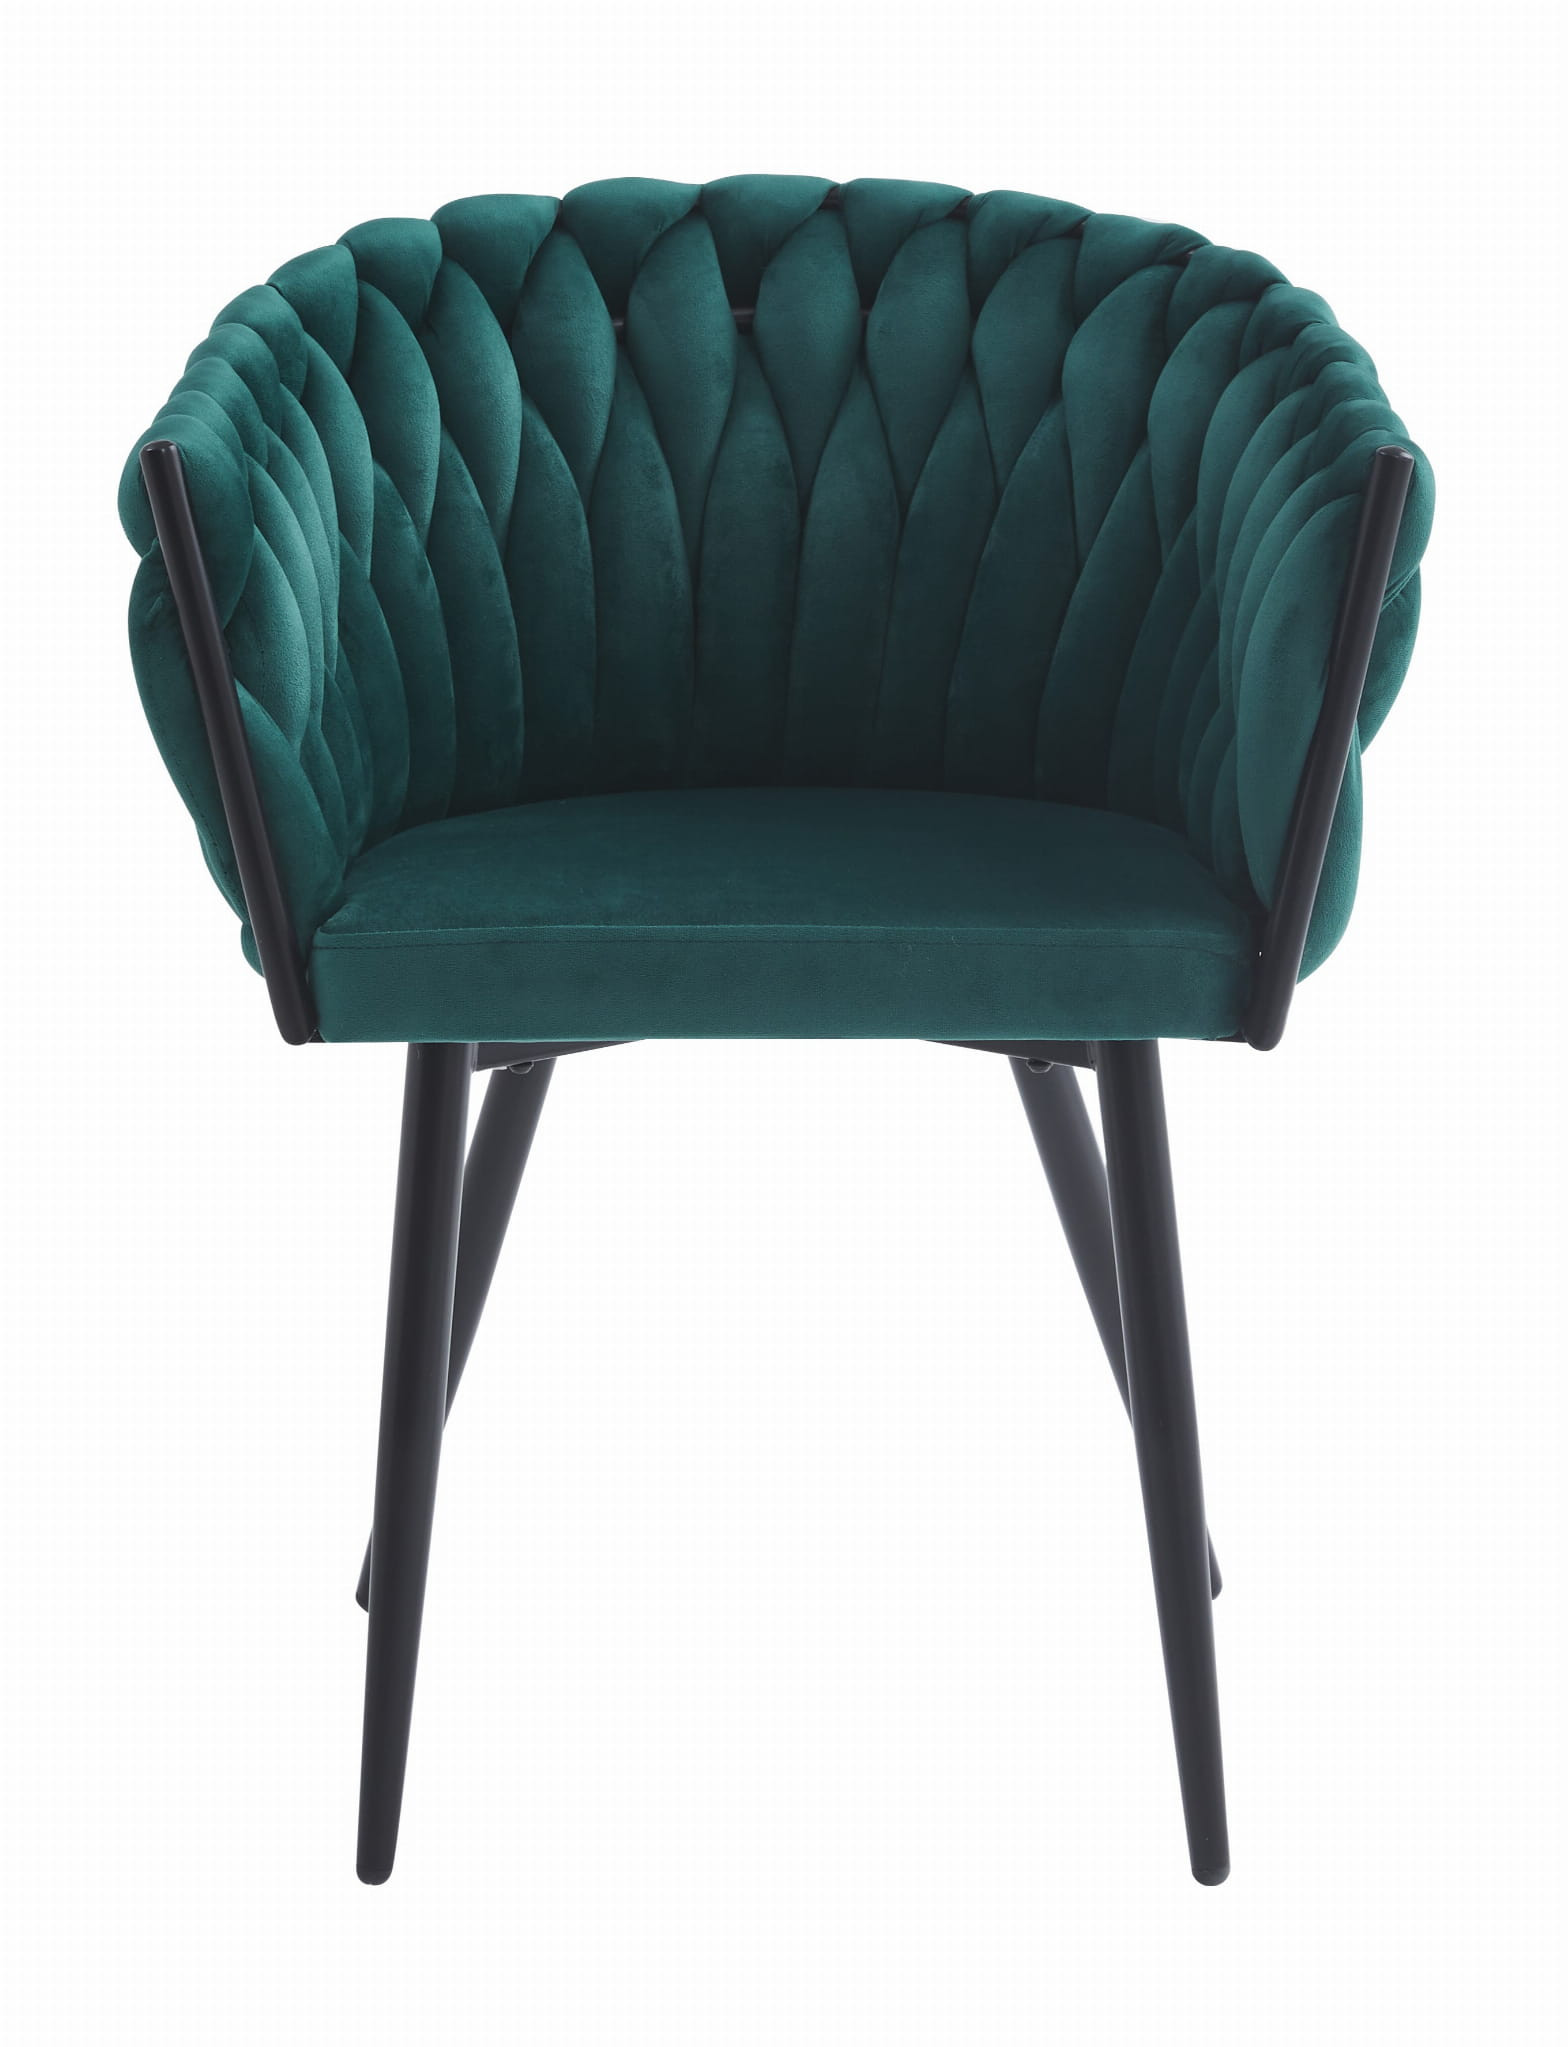 Jídelní židle ORION sametová zelená